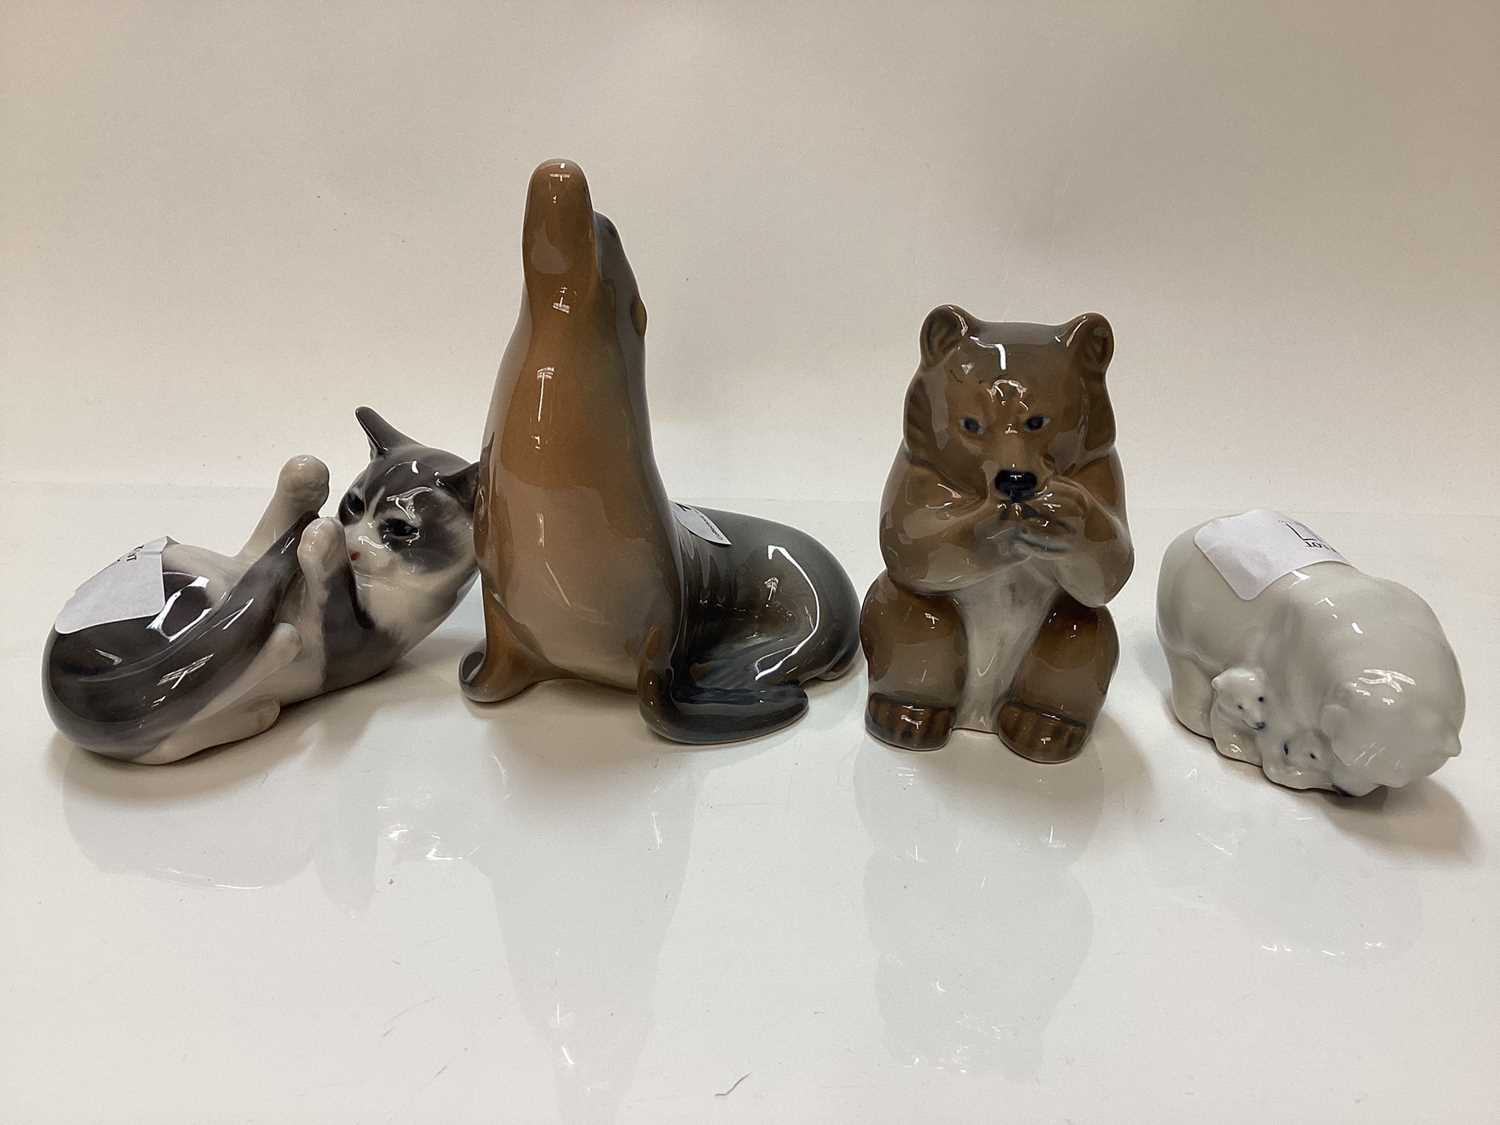 Four Royal Copenhagen porcelain models - Bear number 3014, Kitten number 727, Polar Bear group numbe